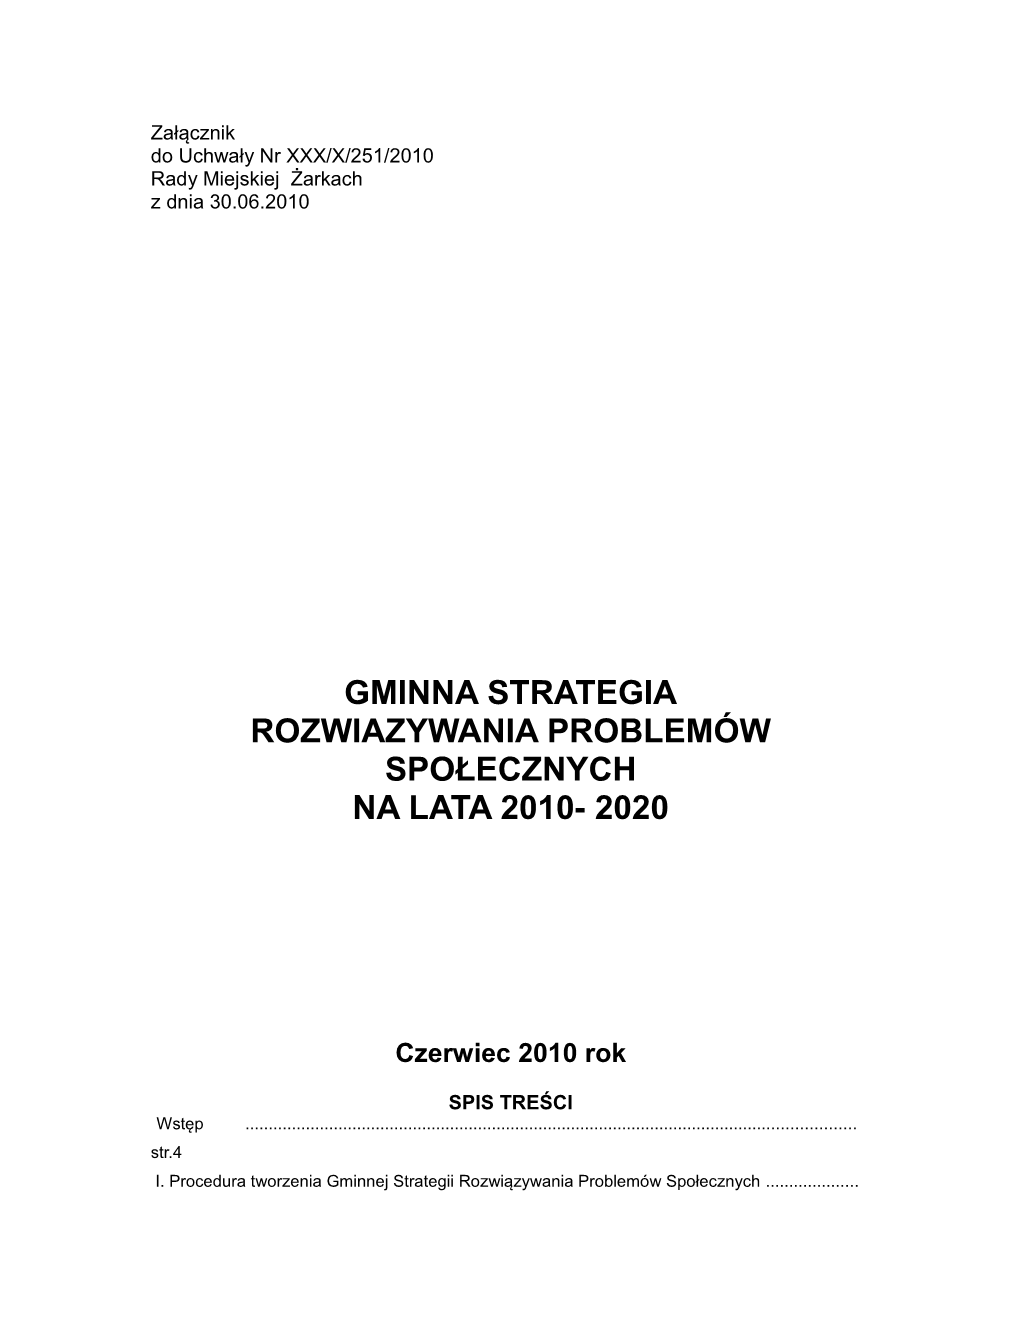 Gminna Strategia Rozwiazywania Problemów Społecznych Na Lata 2010- 2020